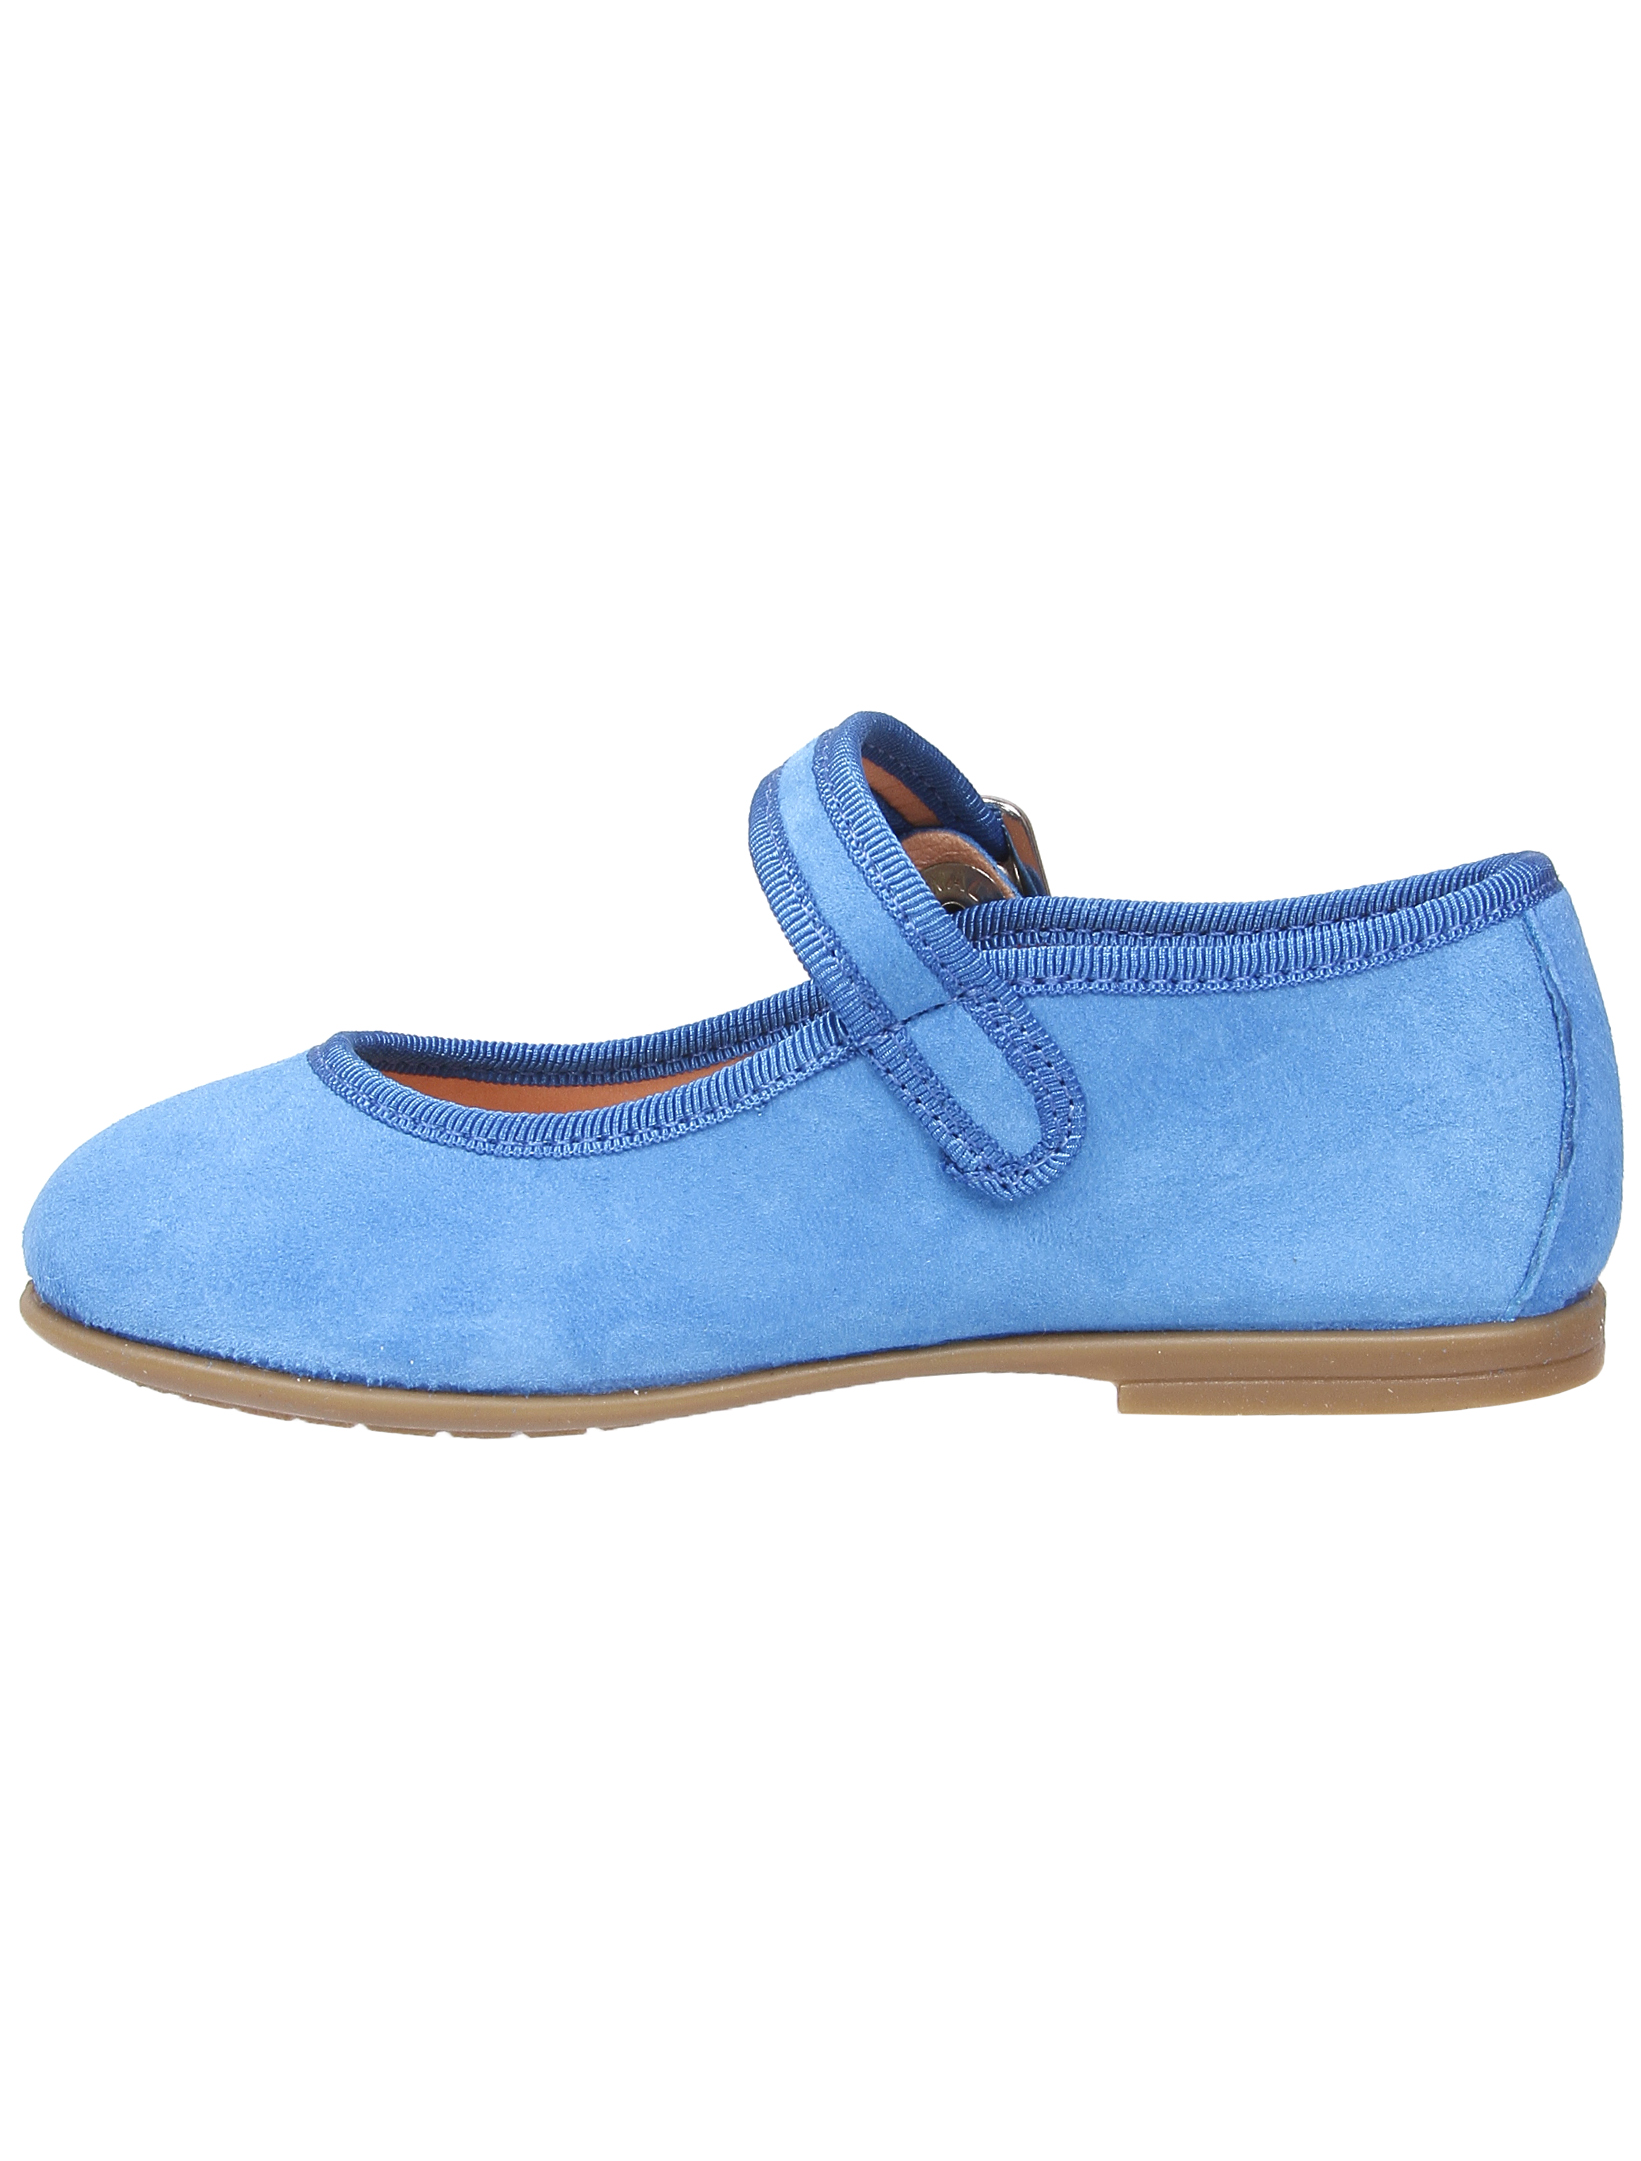 Туфли UNISA 1952860, цвет голубой, размер 28 2011509970013 - фото 4